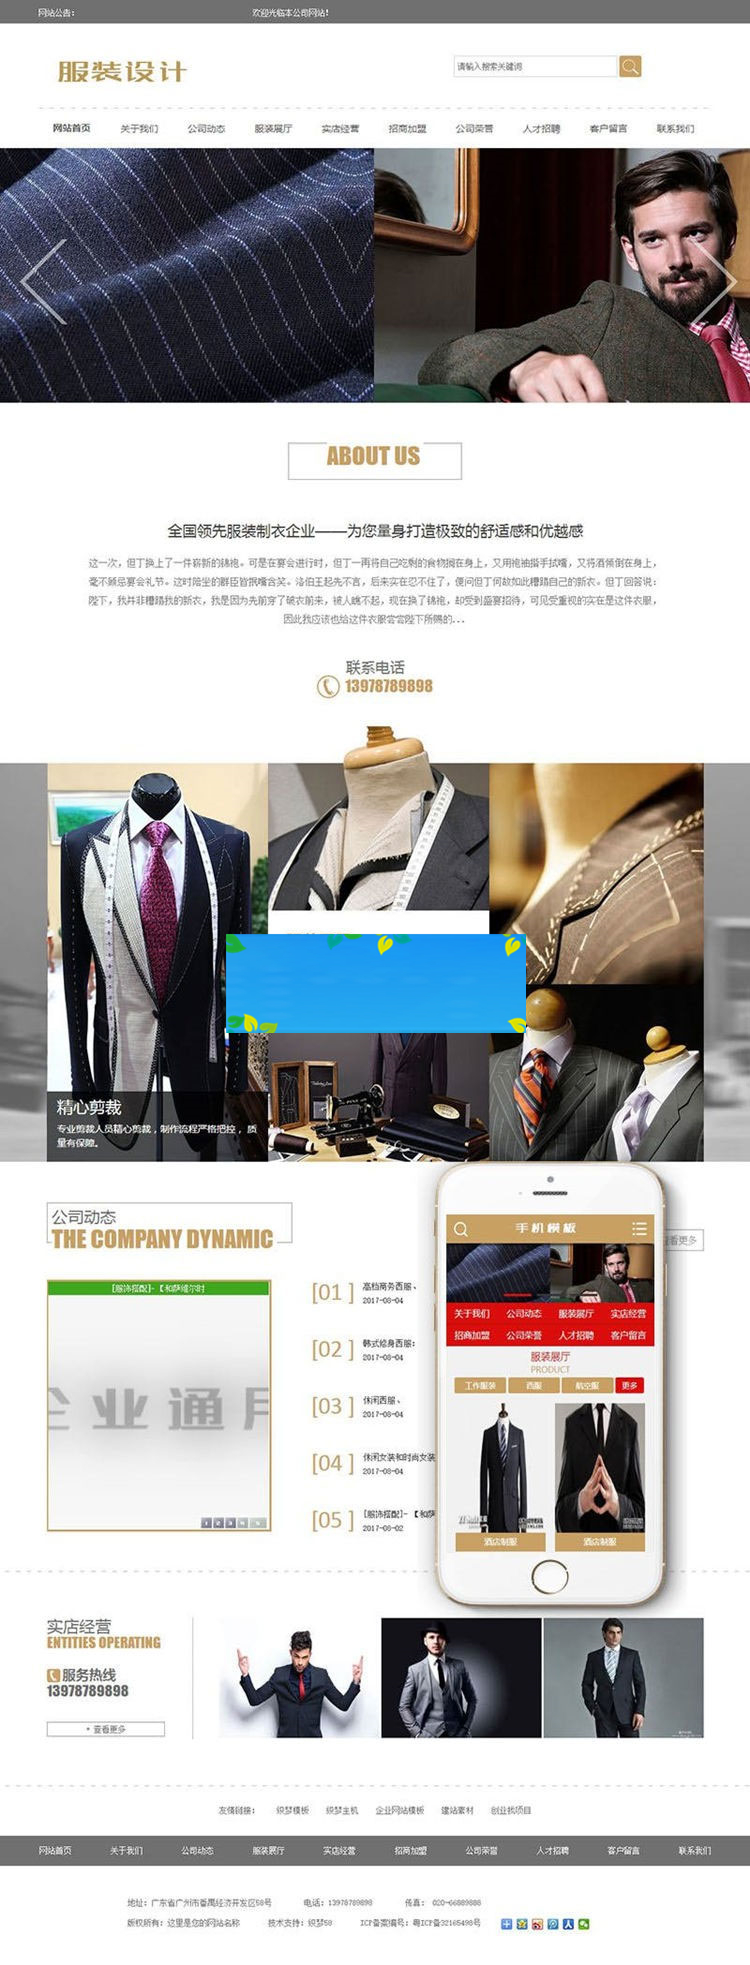 织梦dedecms服装设计展示企业网站模板(带手机移动端)